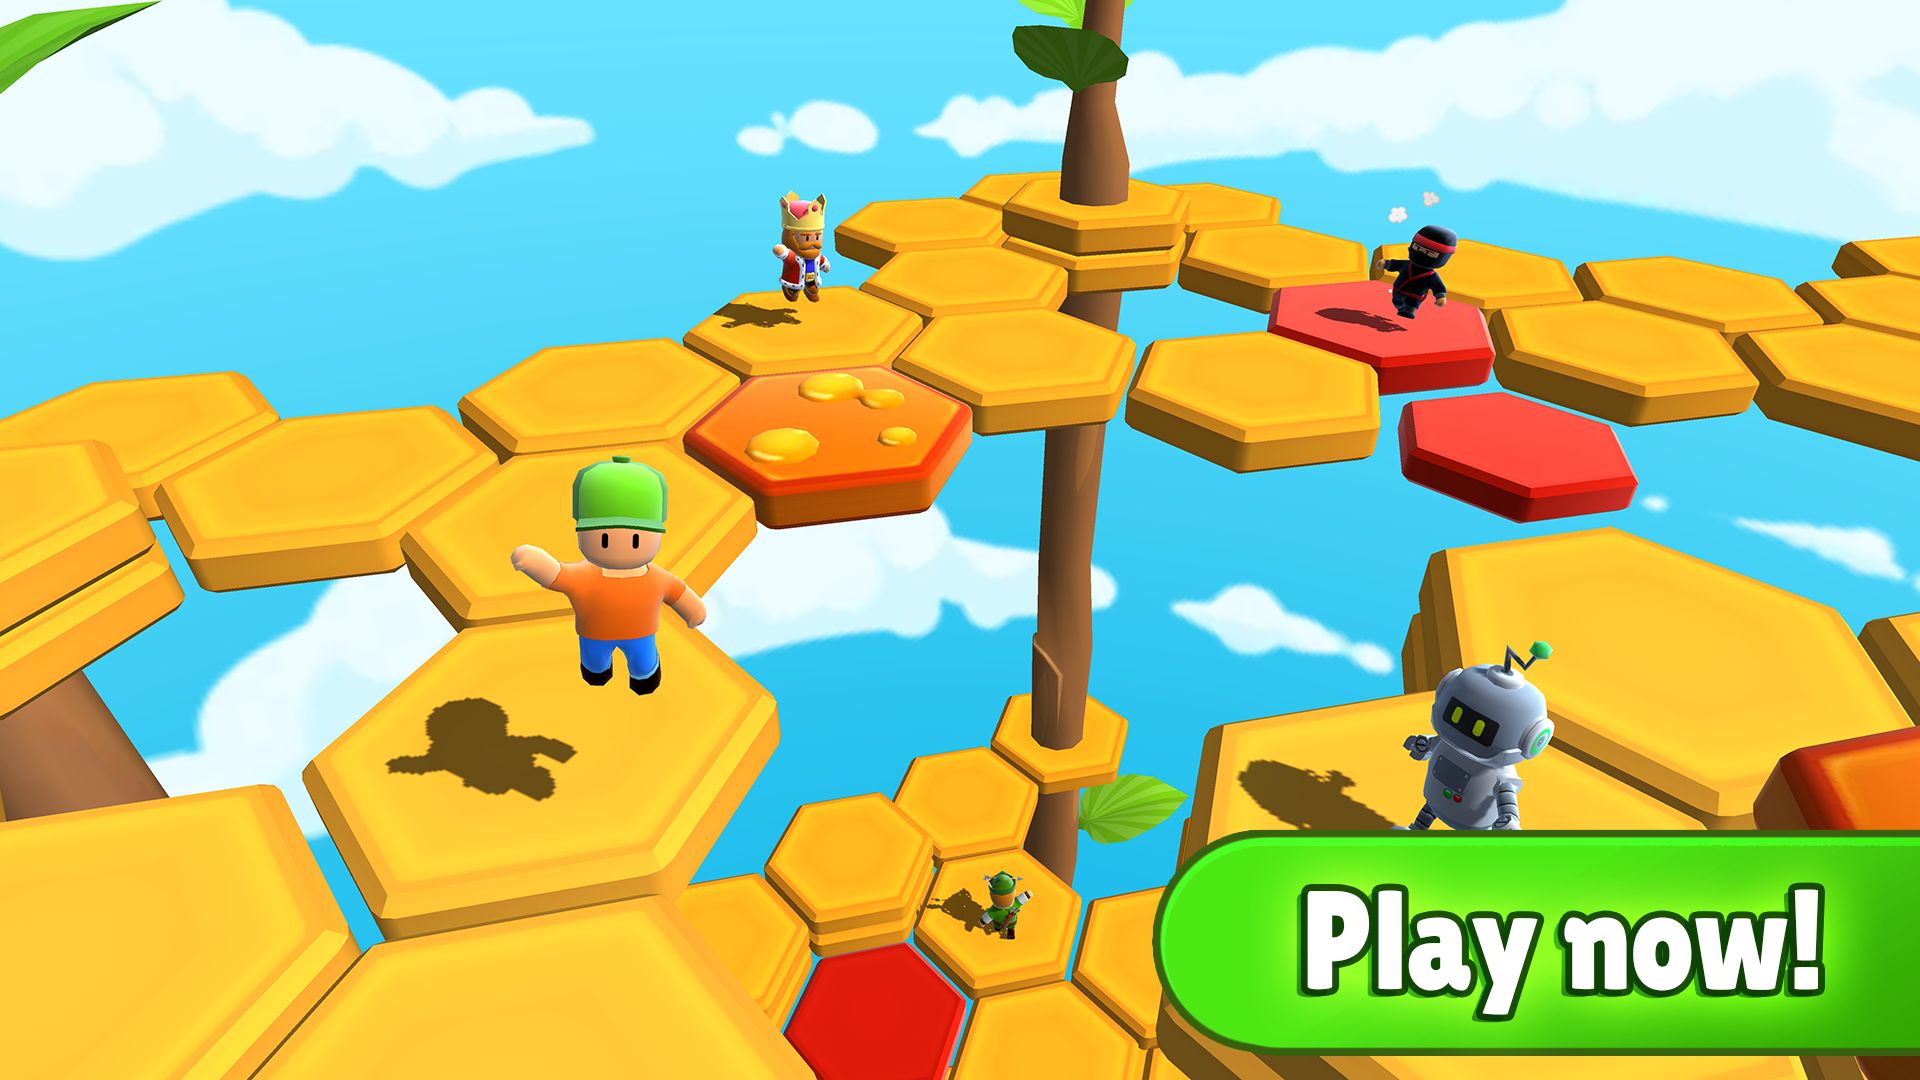 Stumble Guys: Multiplayer Royale APK Download - Panda Helper